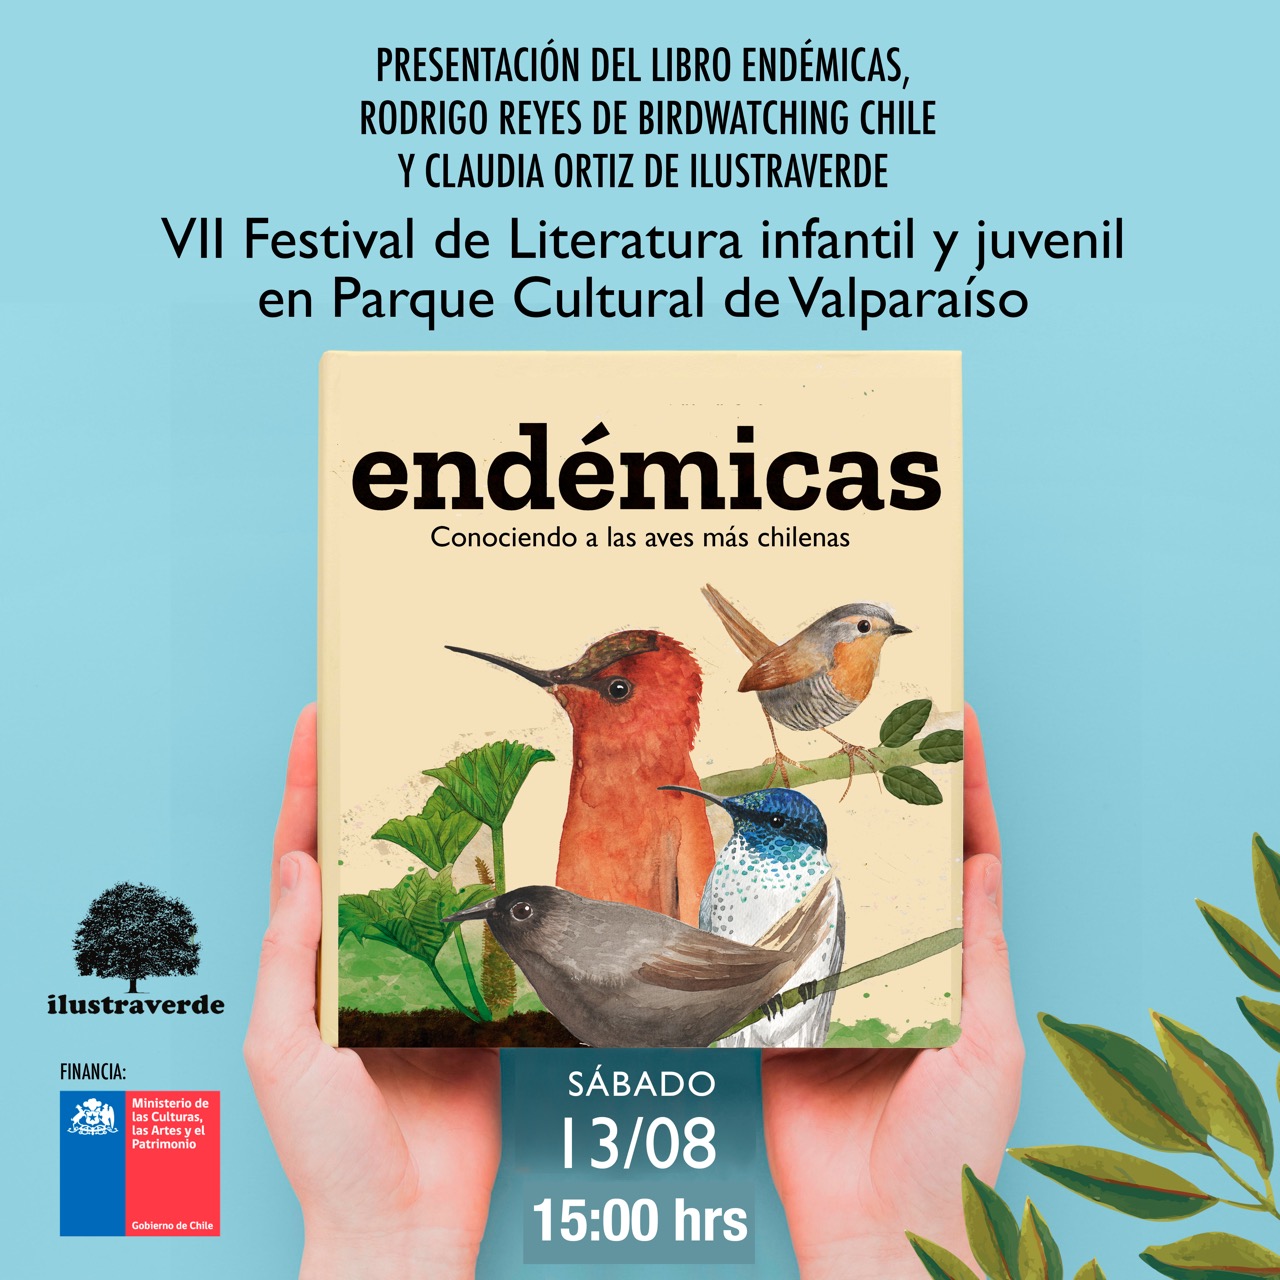 “Endémicas, conociendo a las aves más chilenas” Claudia Ortiz y Rodrigo Reyes